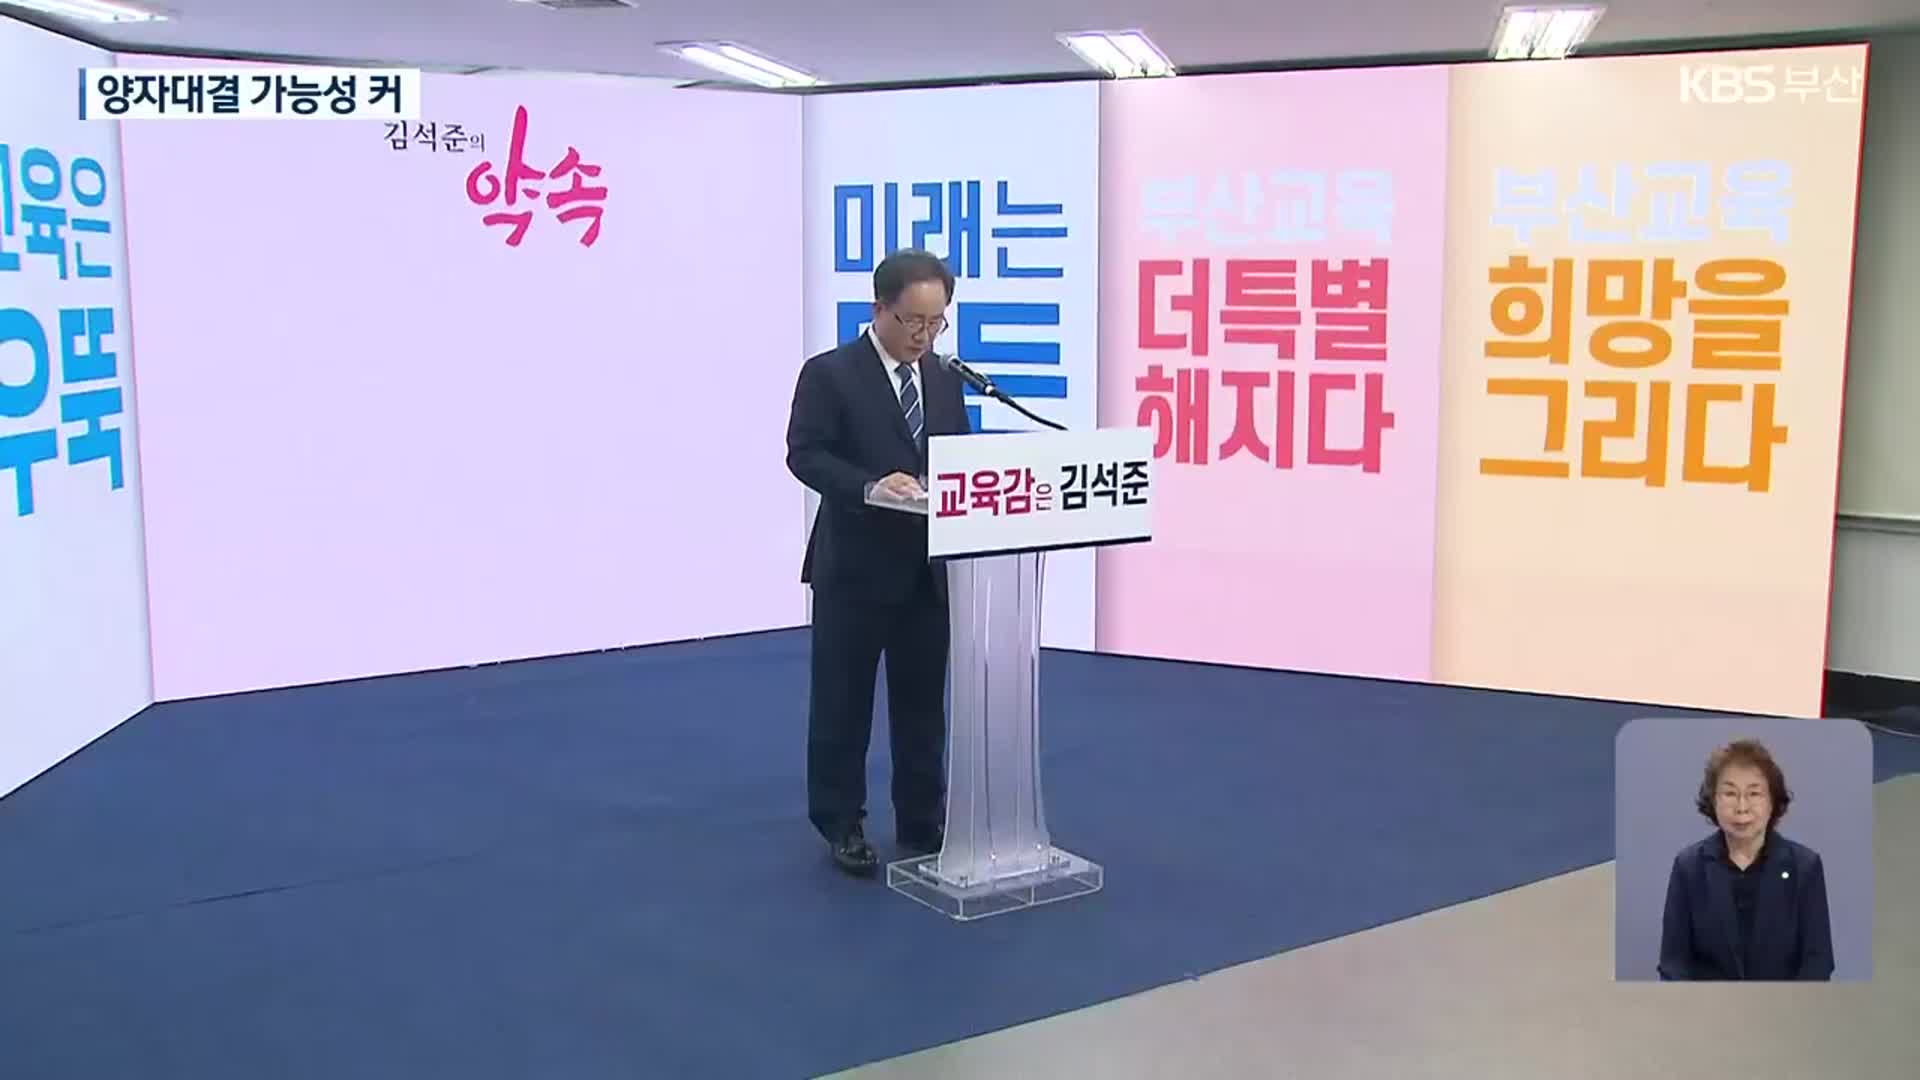 김석준 교육감 공식 출마선언…첫 양자 구도